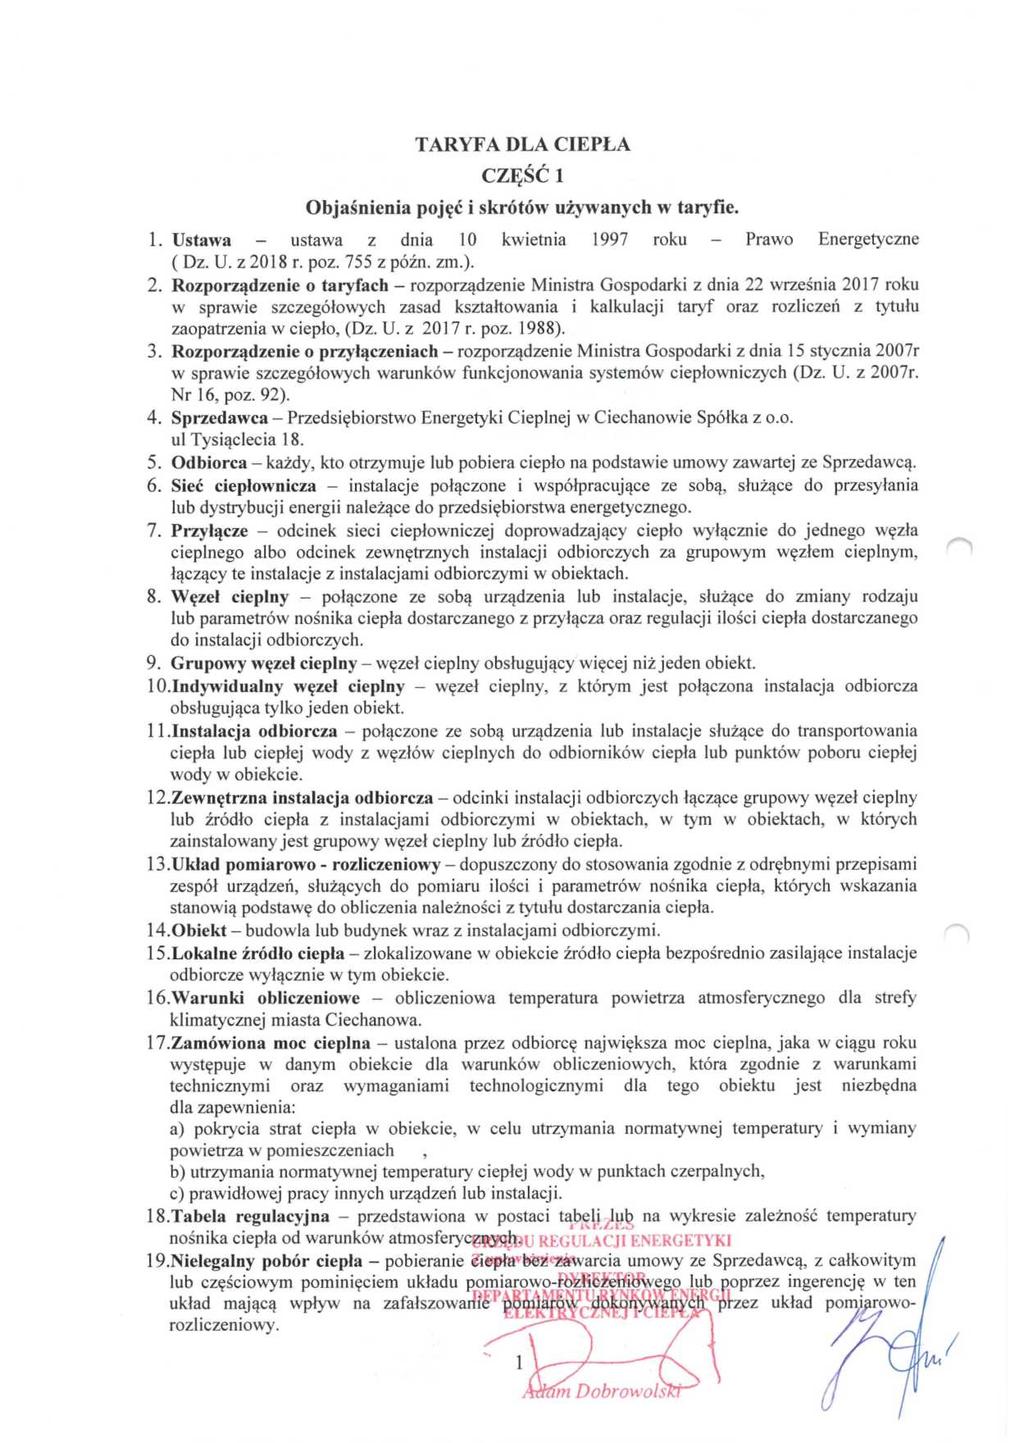 Dziennik Urzędowy Województwa Mazowieckiego 4 Poz. 6798 TARYFA DLA CIEPŁA CZĘŚĆ 1 Objaśnienia pojęć i skrótów używanych w taryfie. 1. Ustawa - ustawa z dnia 10 kwietnia 1997 roku - Prawo Energetyczne ( Dz.